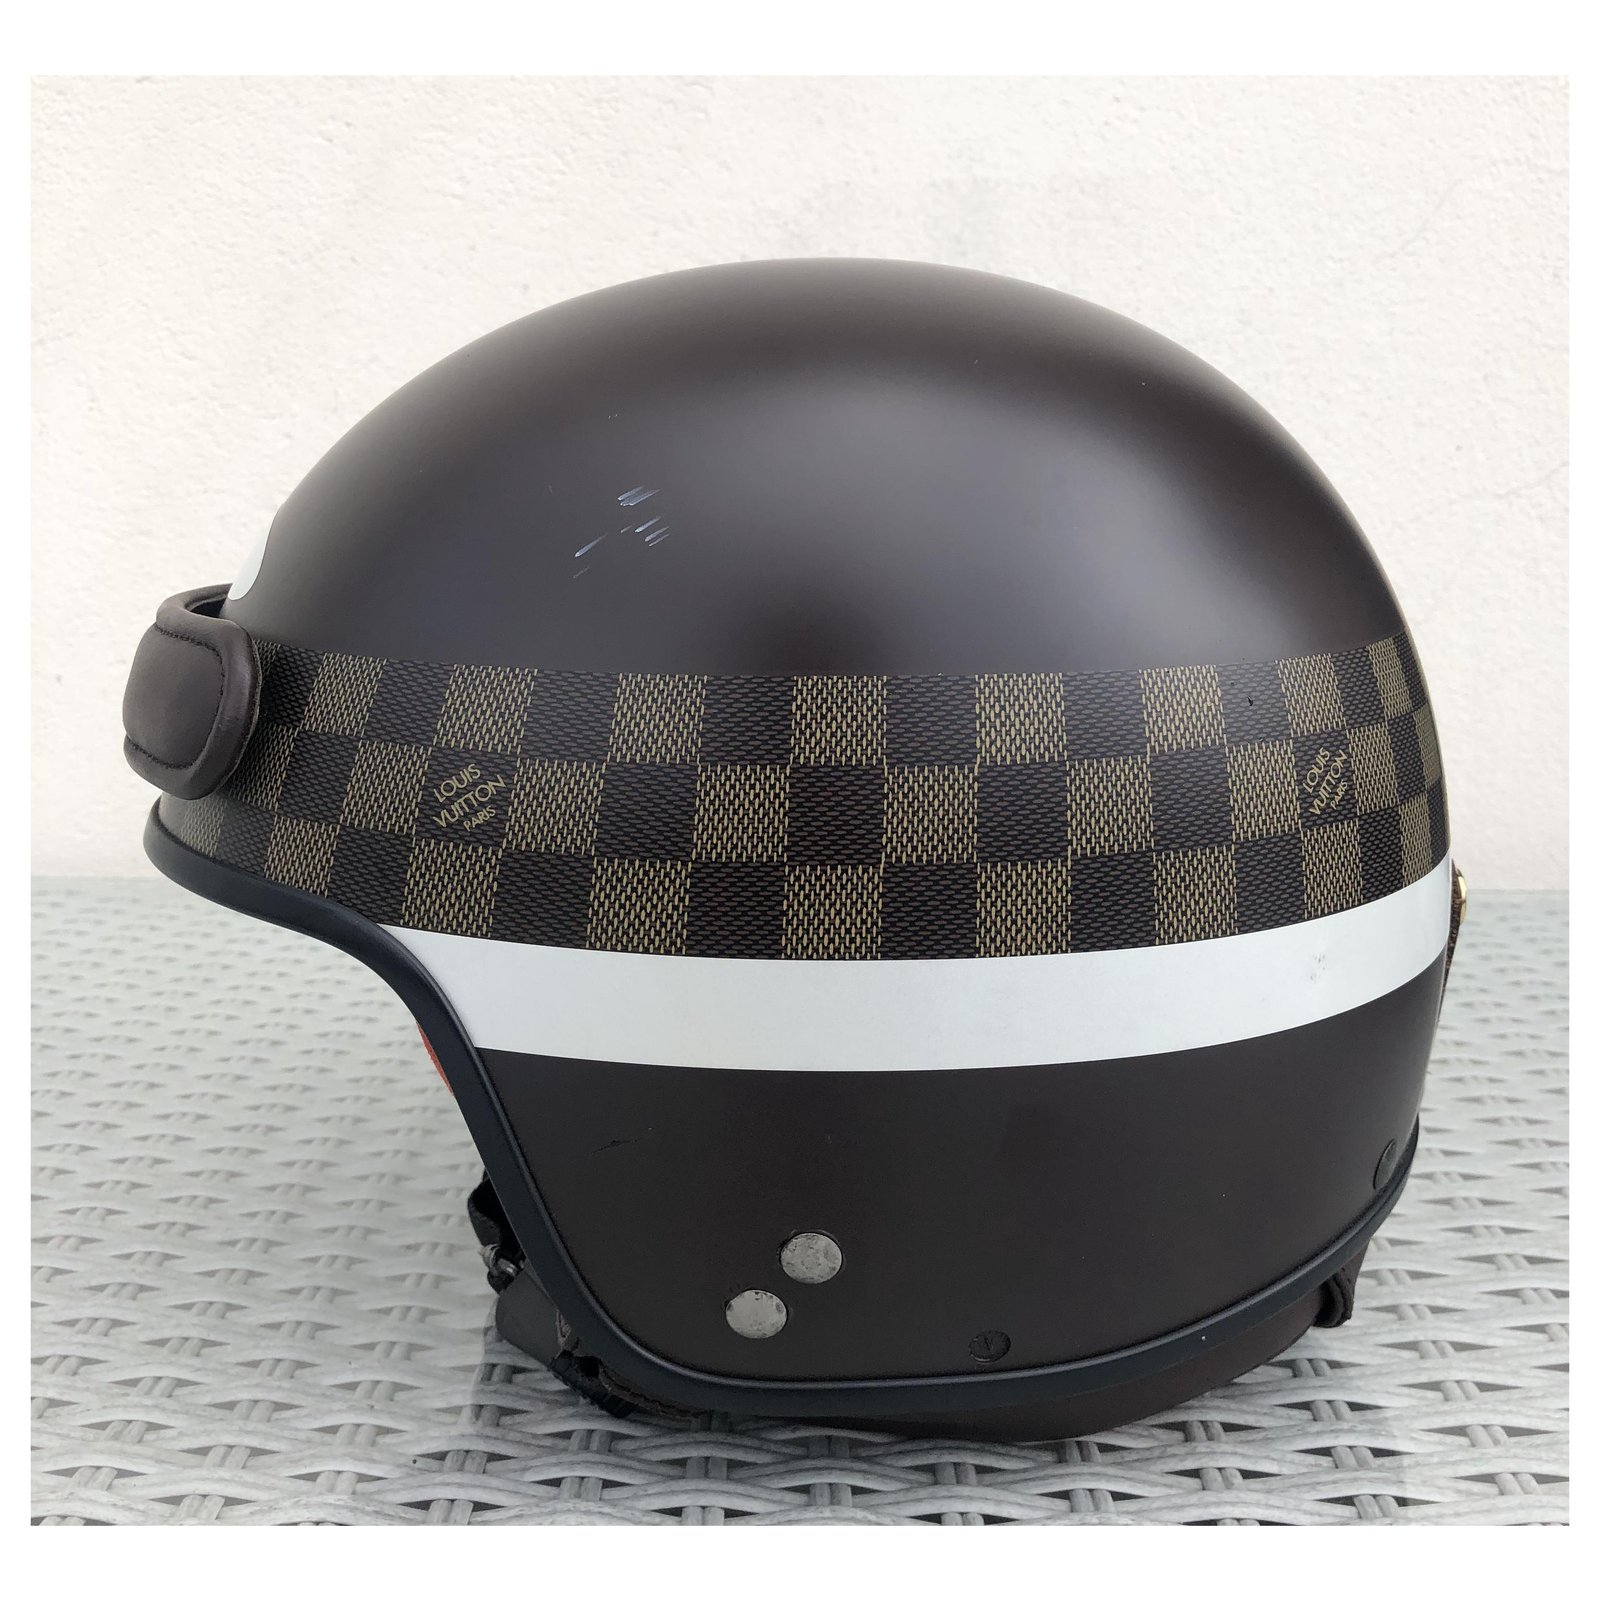 gucci motorcycle helmet